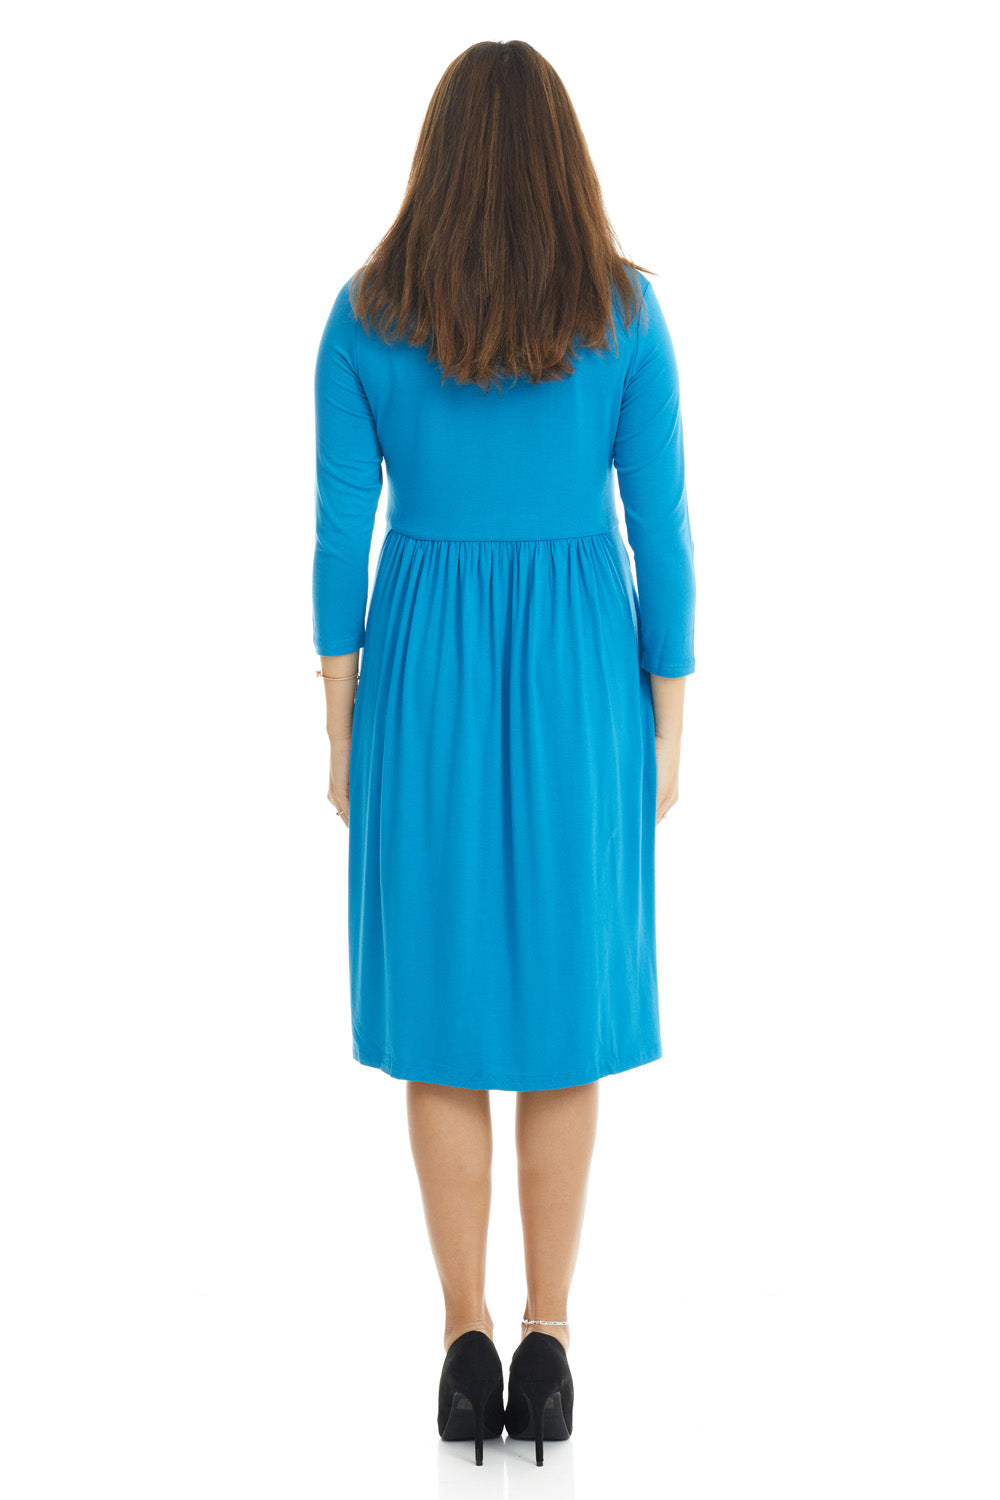 Esteez RACHEL Dress - 3/4 Sleeve Cinched Empire Waist Dress - BLUE